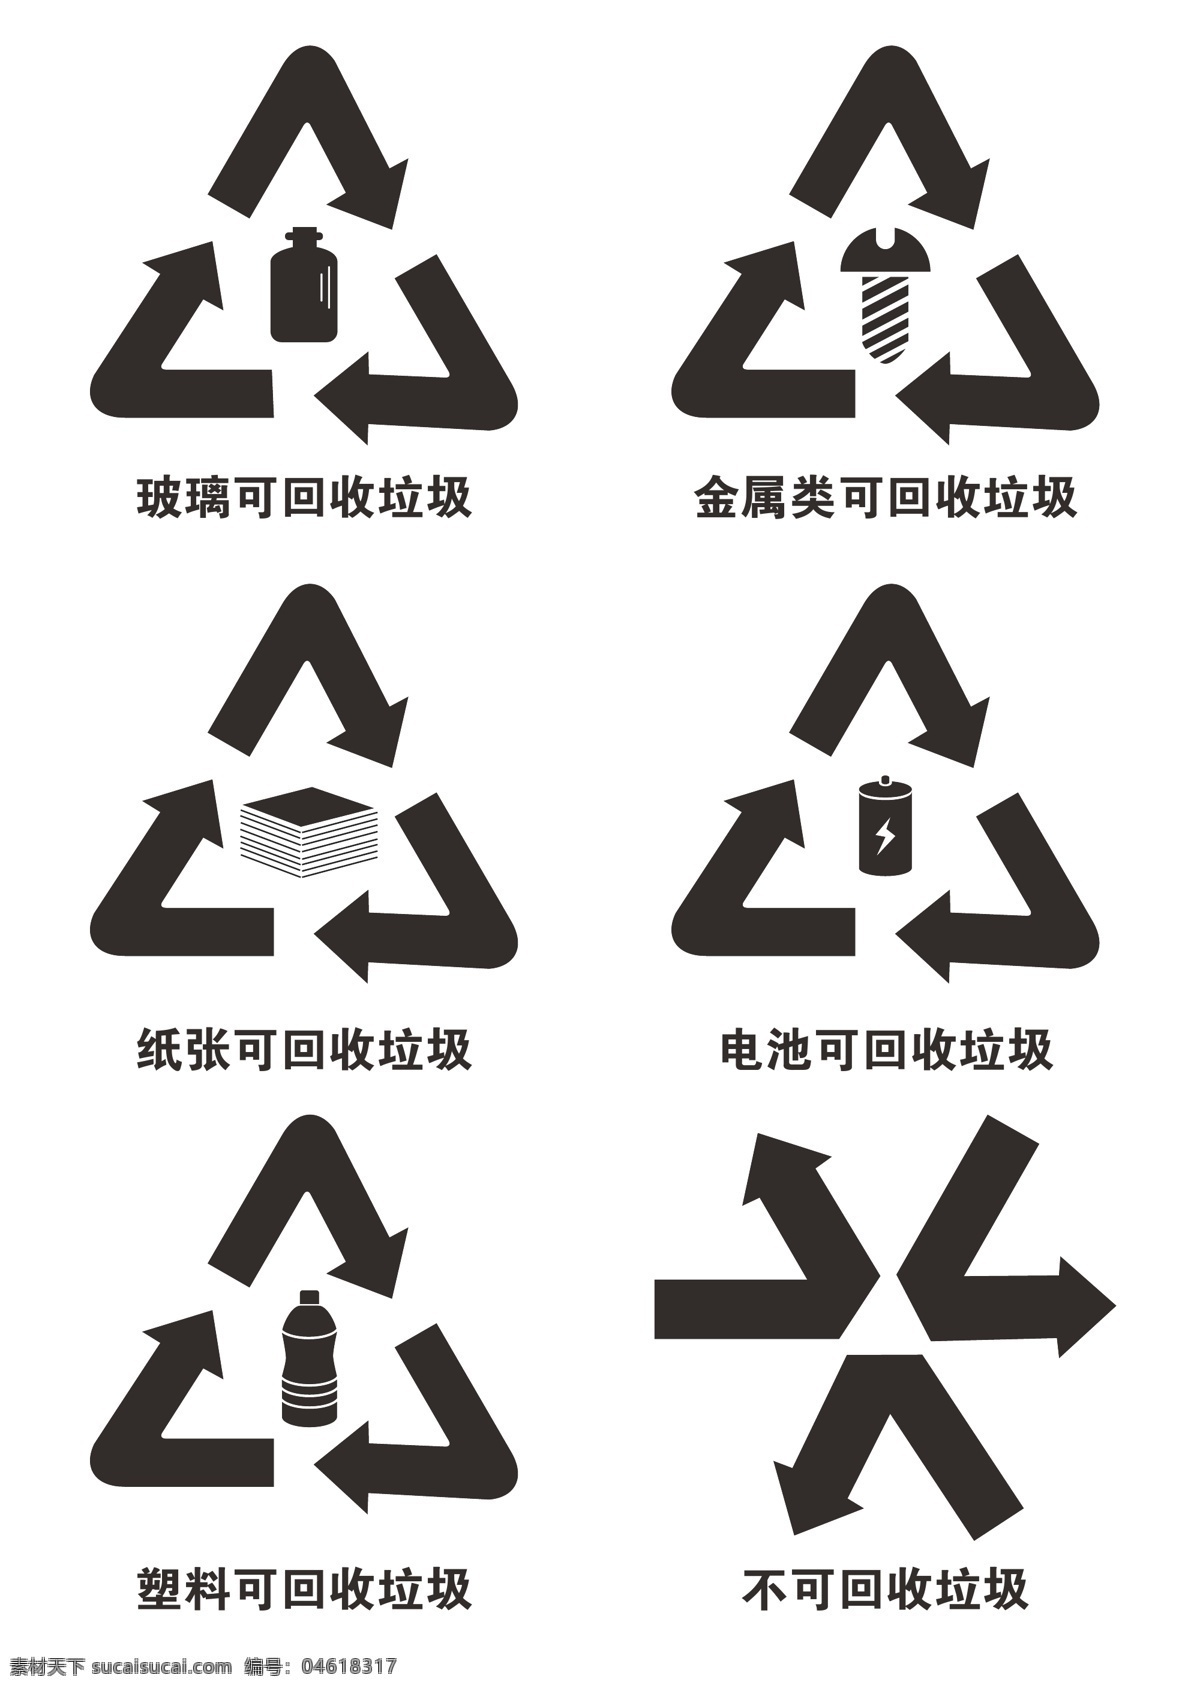 回收 垃圾 分类 标志 垃圾桶标志 可回收标志 垃圾分类标志